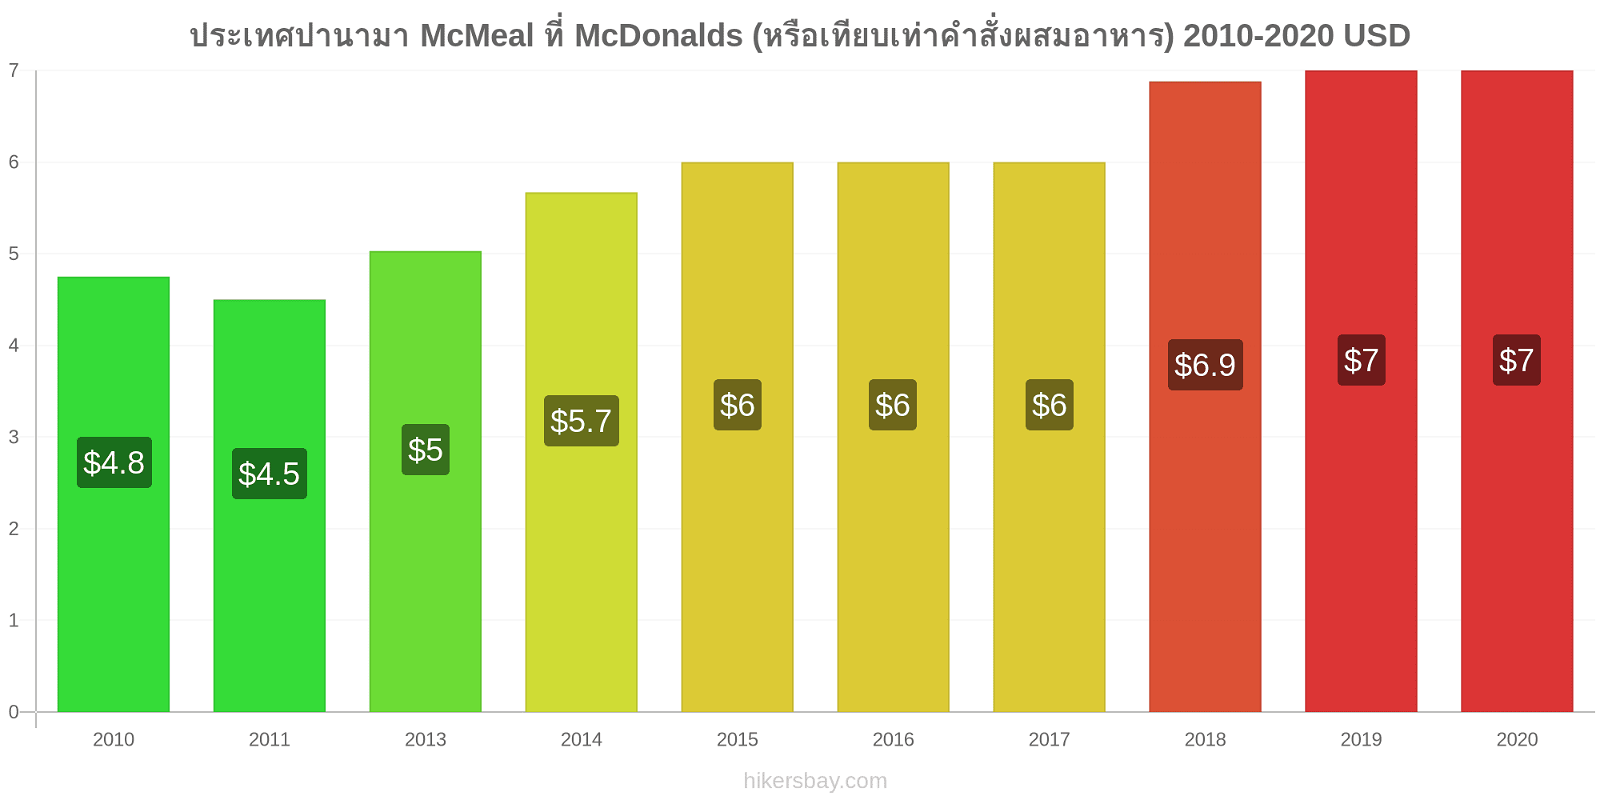 ประเทศปานามา การเปลี่ยนแปลงราคา McMeal ที่ McDonalds (หรือเทียบเท่าคำสั่งผสมอาหาร) hikersbay.com